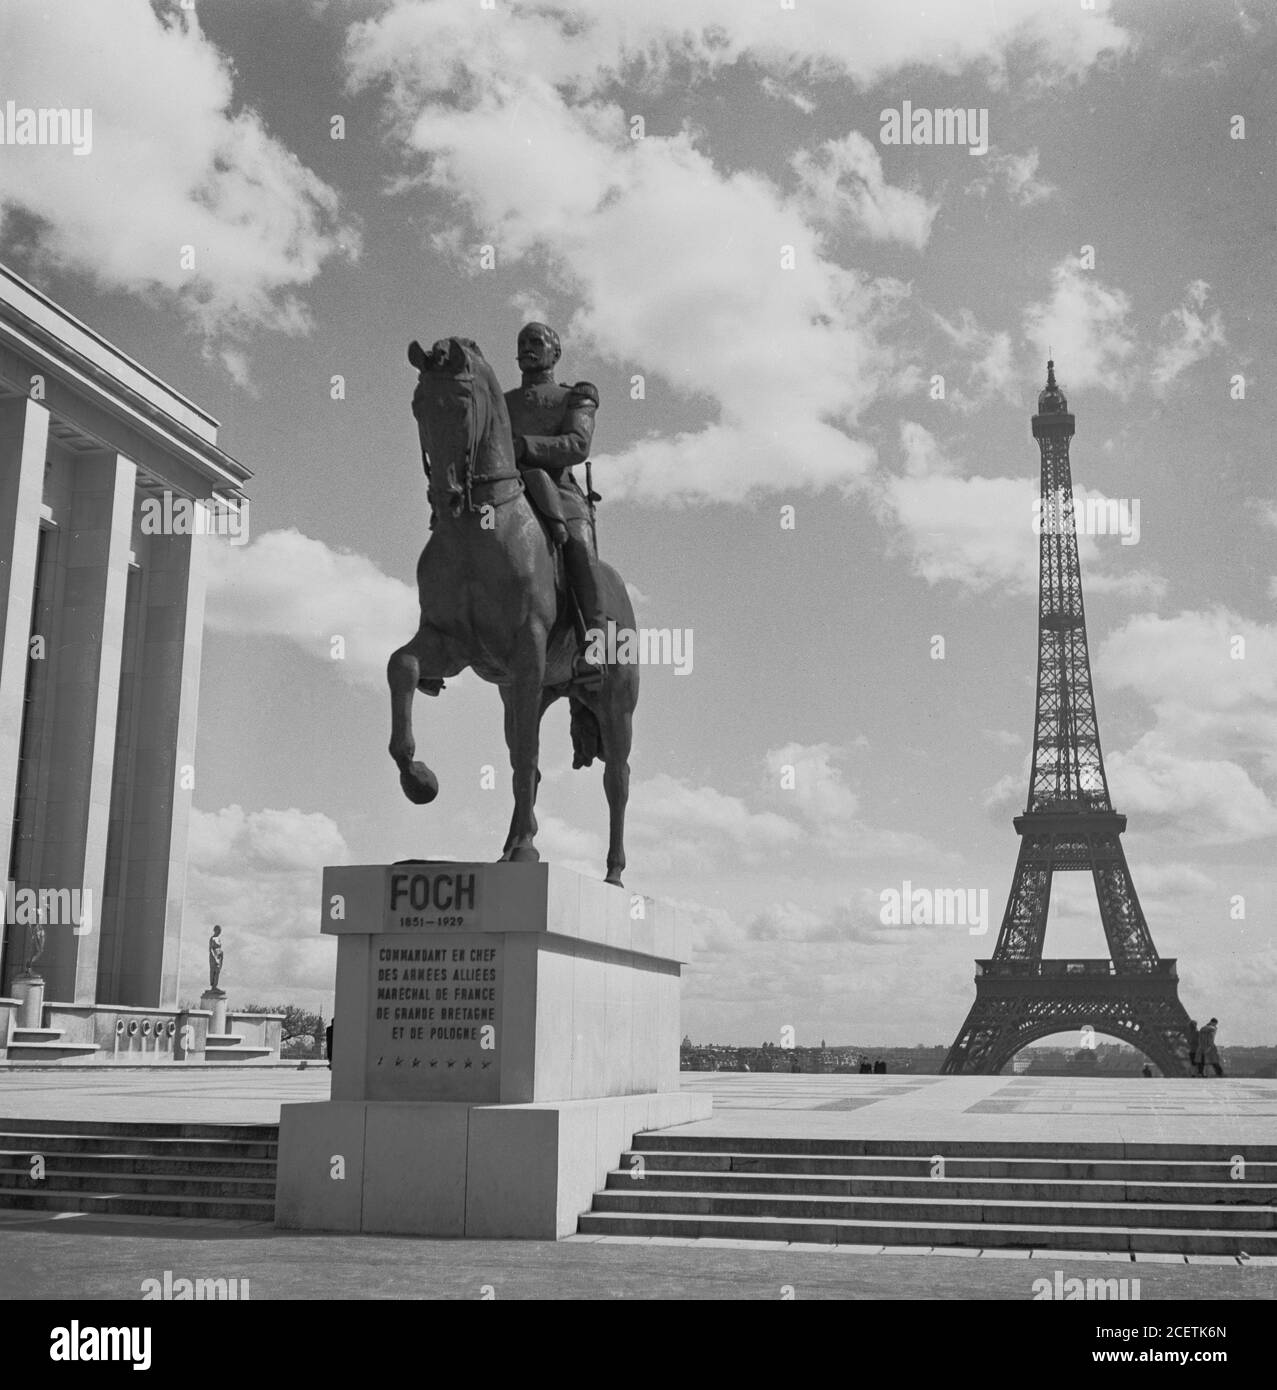 1950er Jahre, historisches Bild mit Satutenbild des Ferdinand Foch (1851-1929) Kommandanten im Chef der Alliierten Streitkräfte auf dem Eiffelturm, Paris, Frankreich. Stockfoto